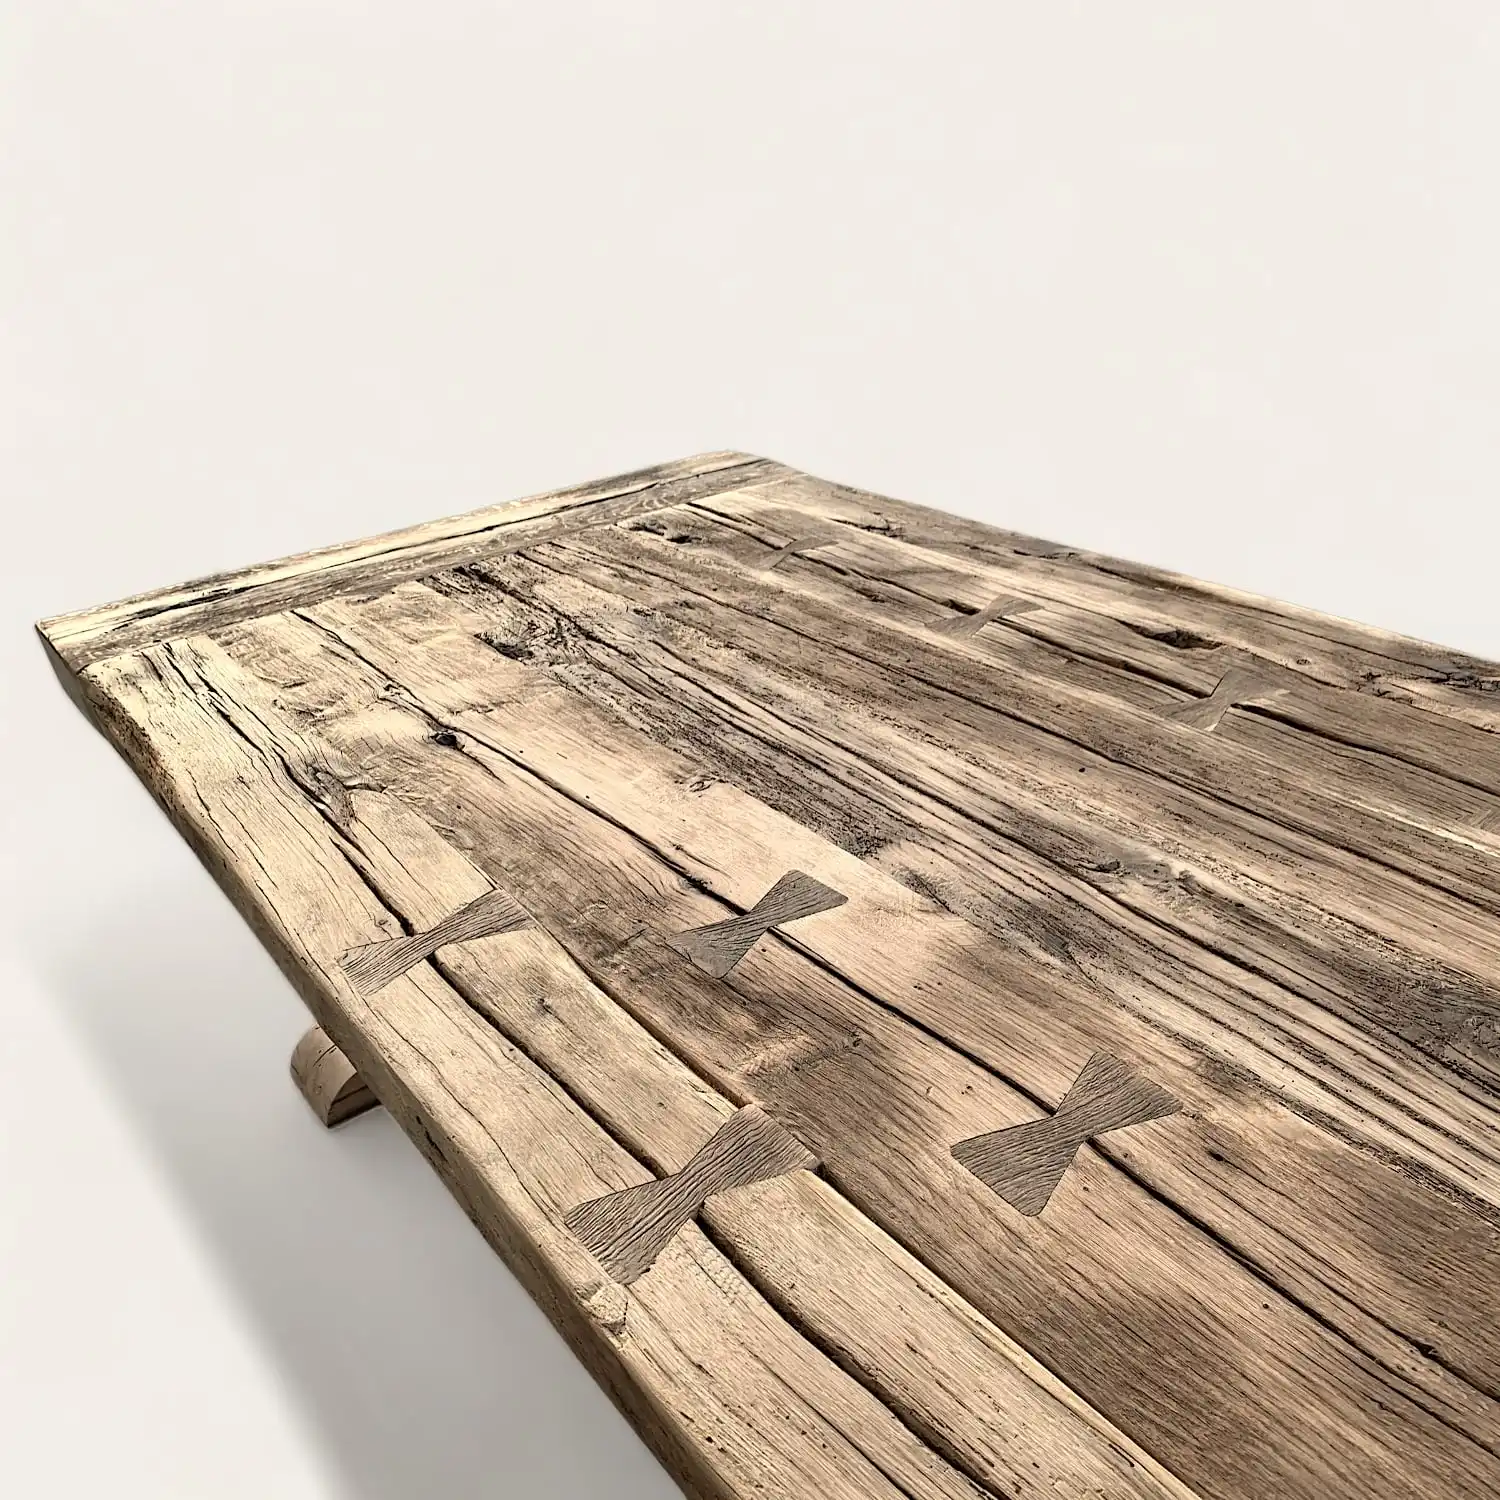  Une table en bois rustique avec une croix dessus. 